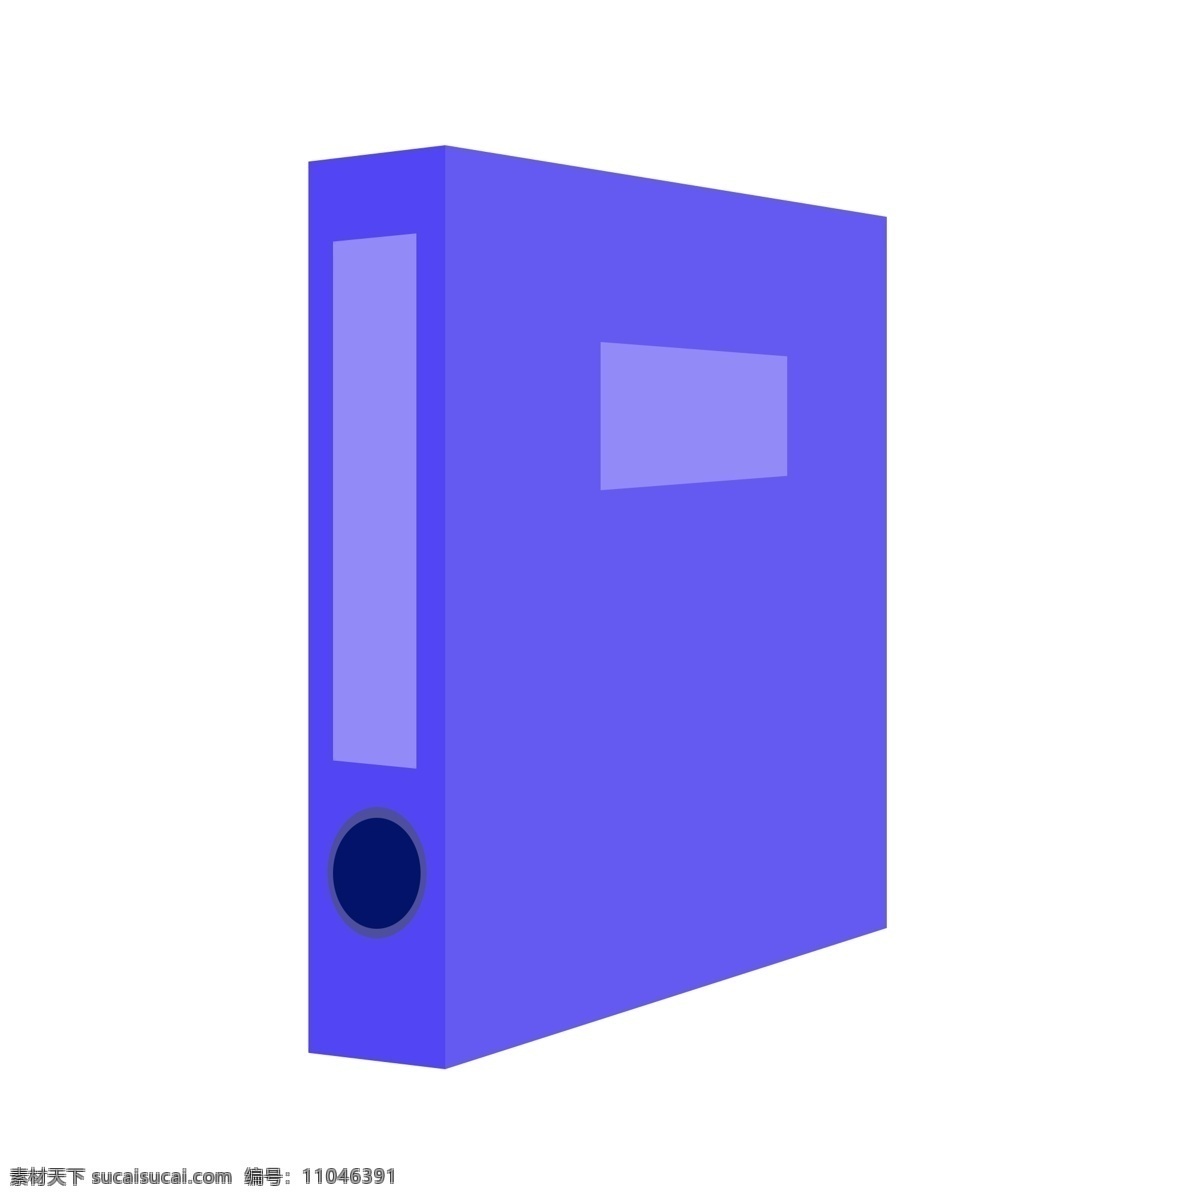 文件 分类 办公 档案盒 办公用品 盒子 蓝色塑料盒子 档案 塑料档案盒 文件分类 资料归类